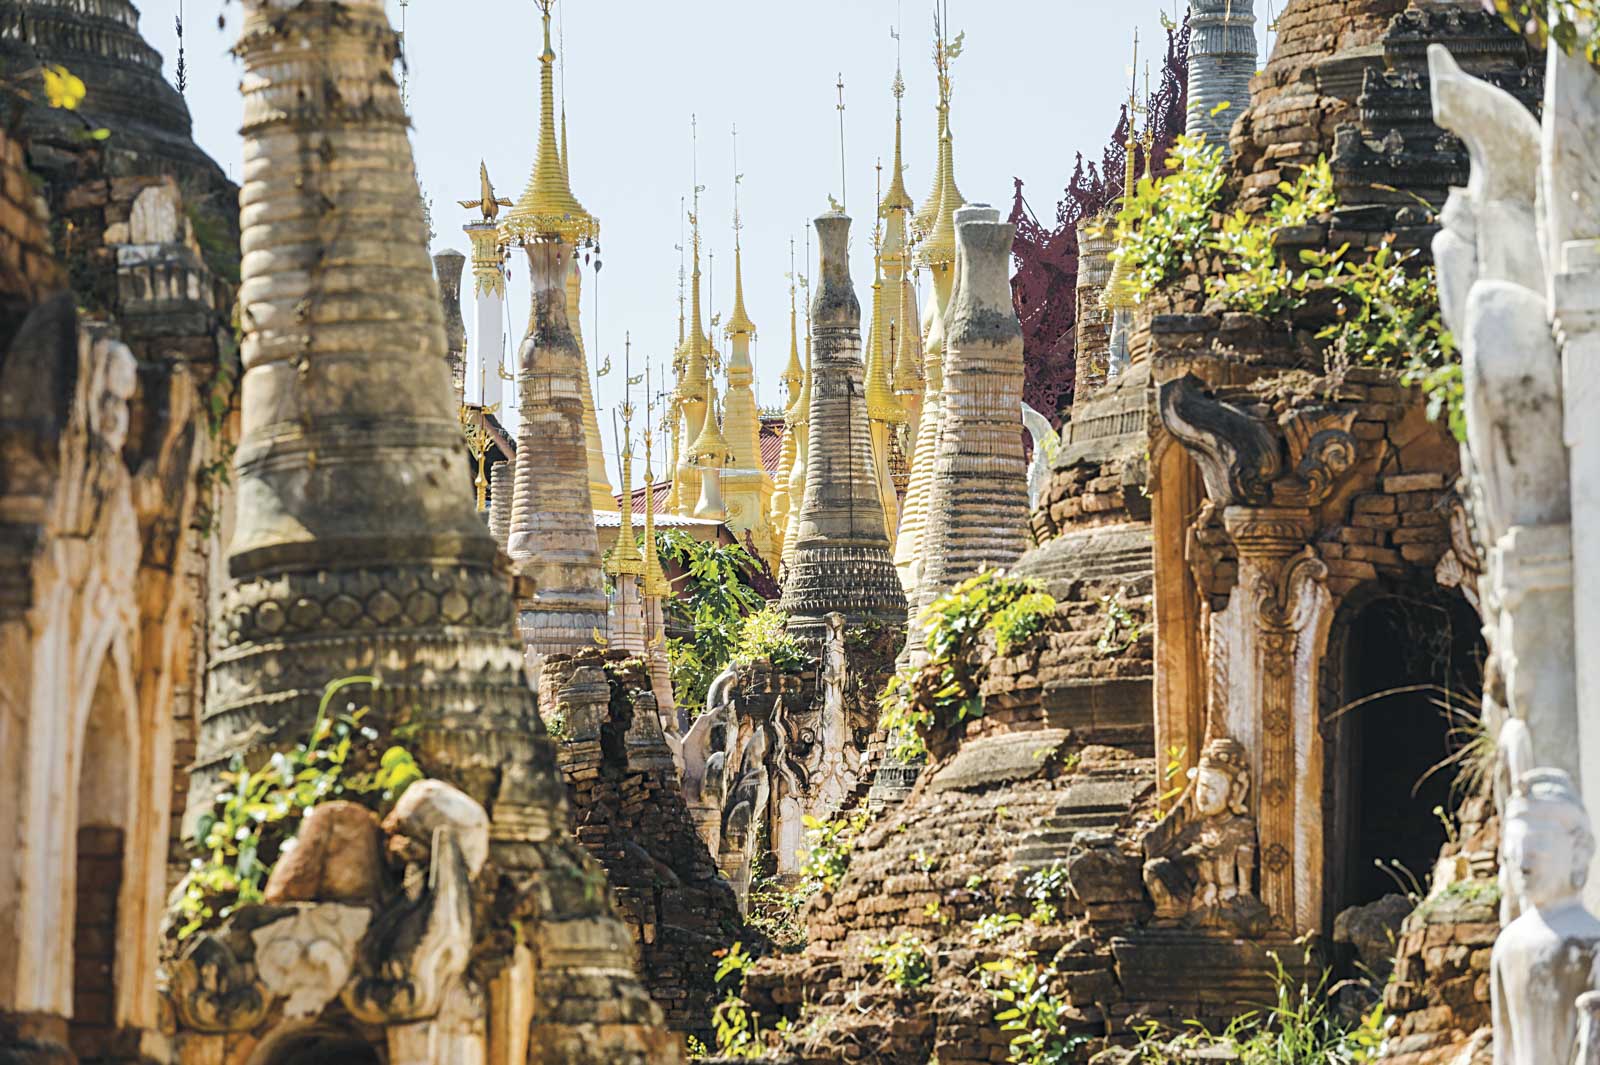 Temples in Bagen, Myanmar